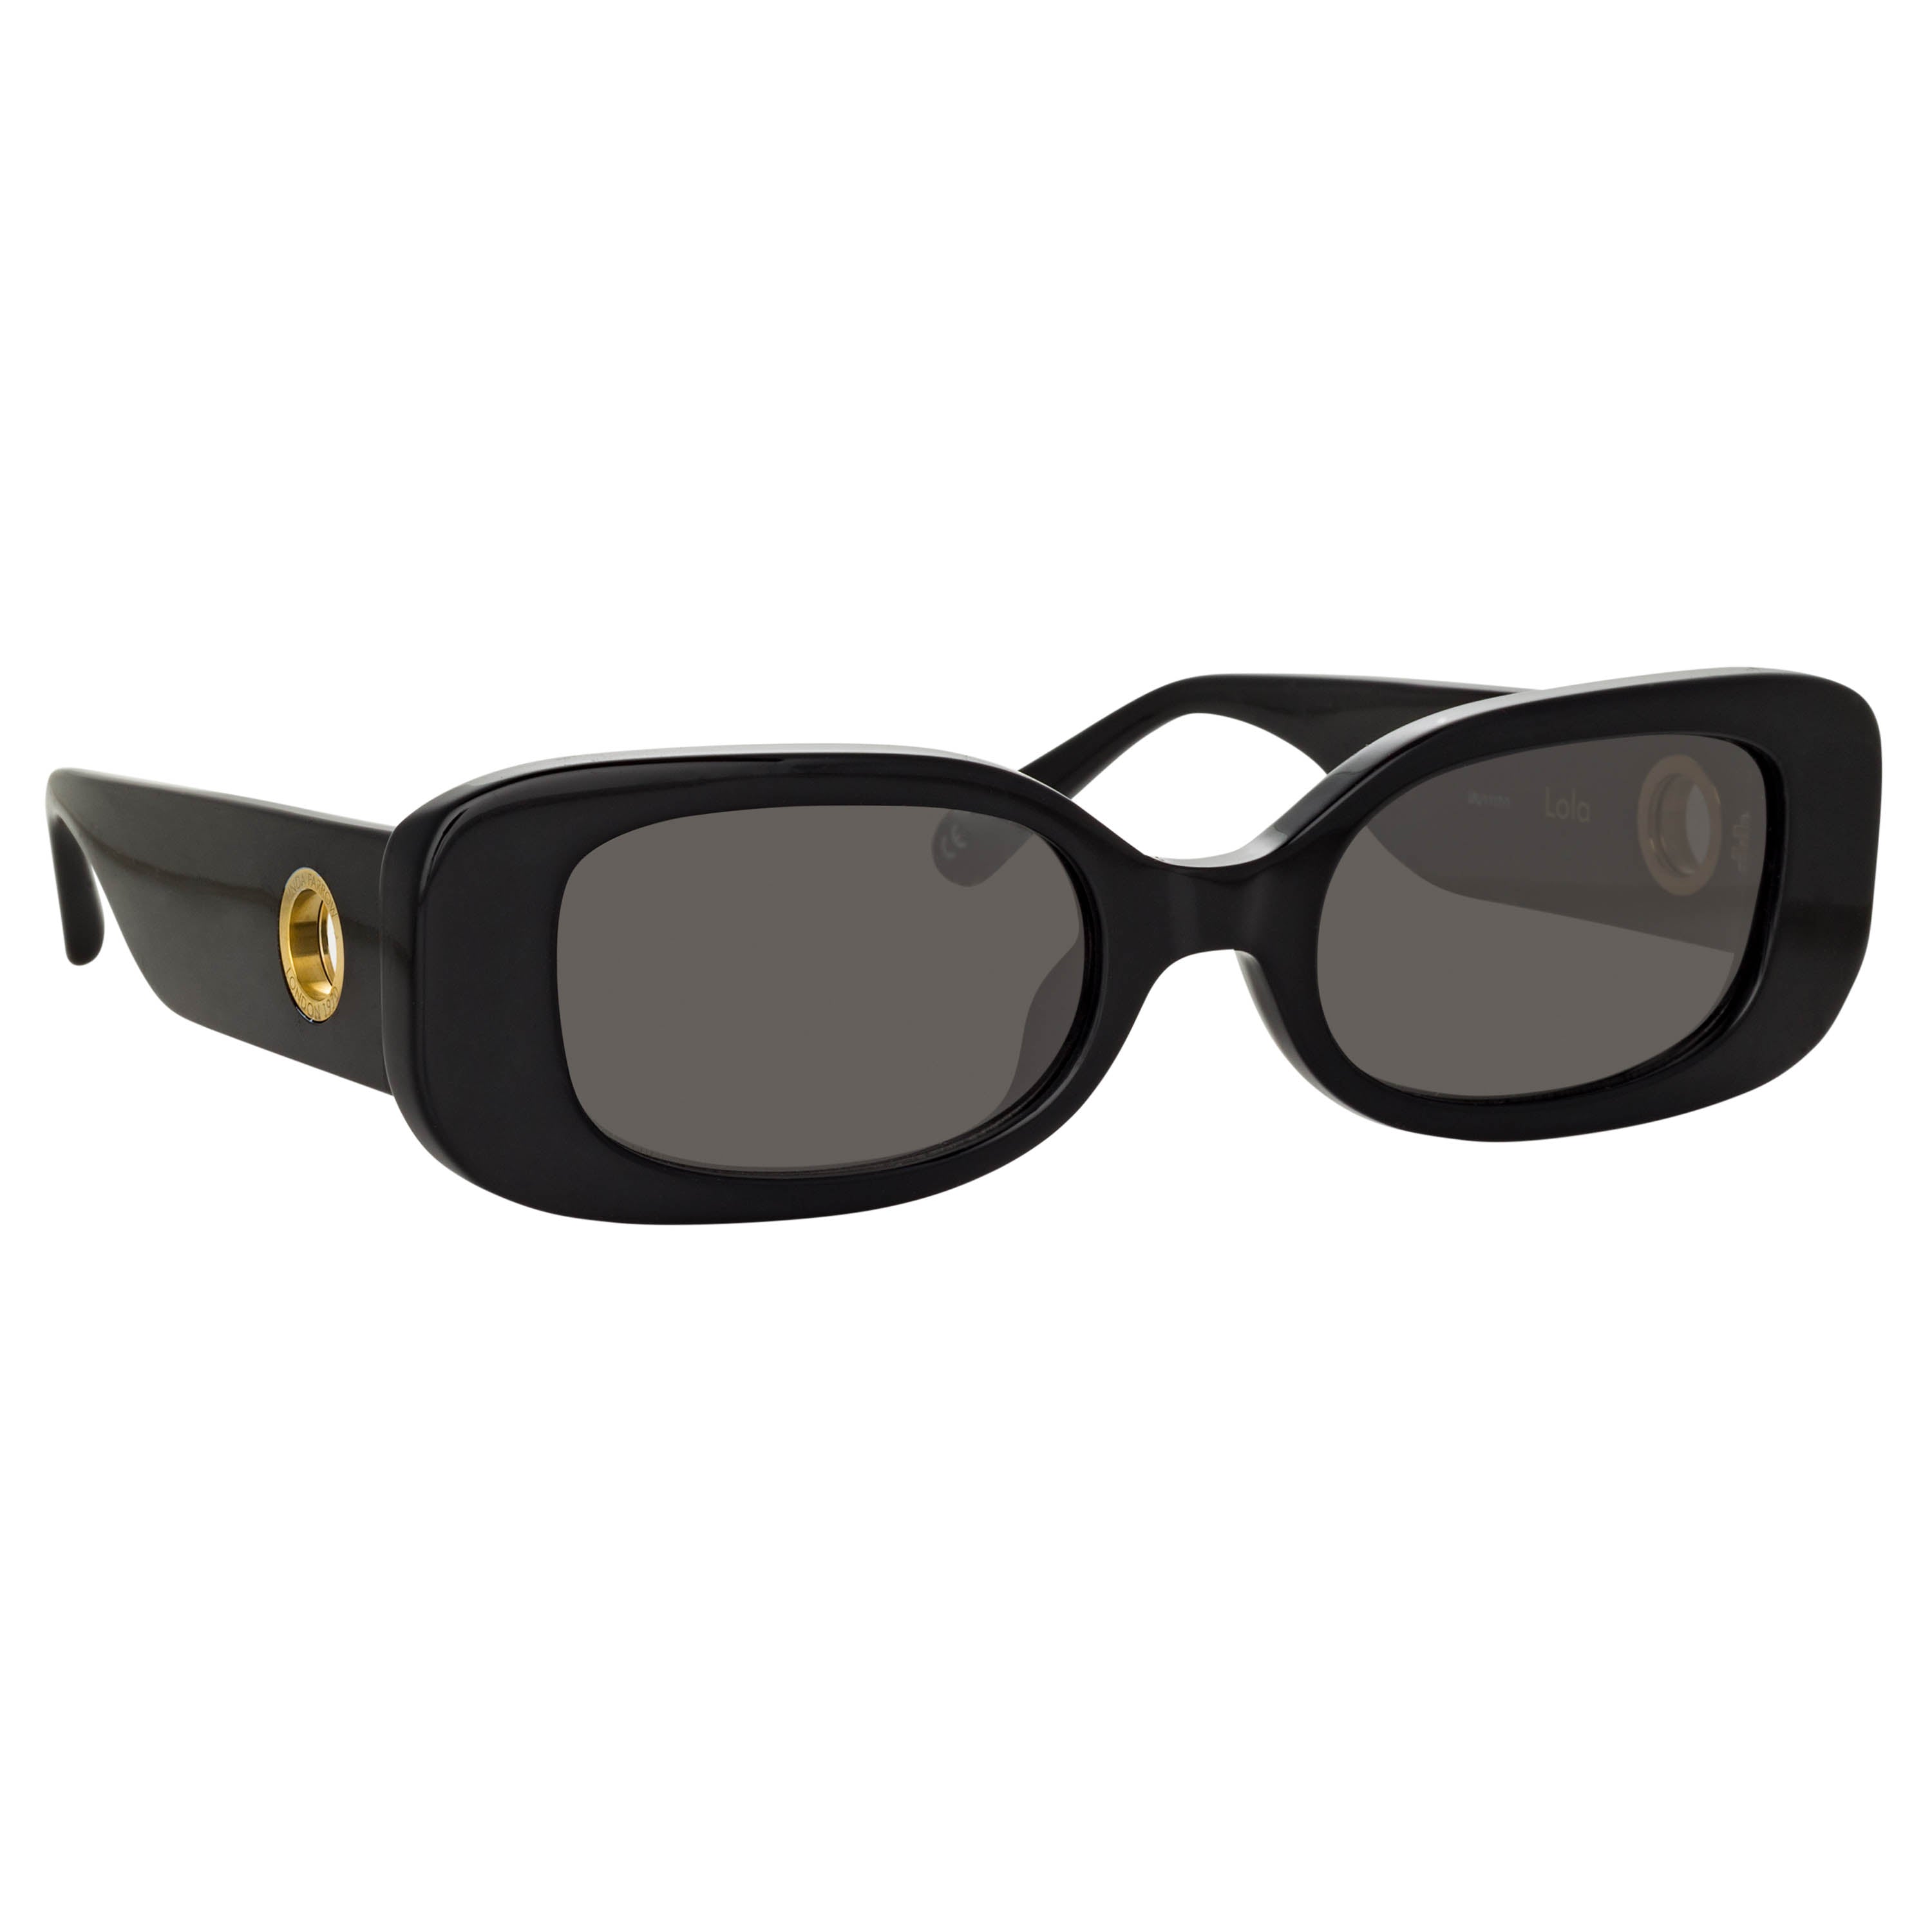 Miu Miu small oval black sunglasses